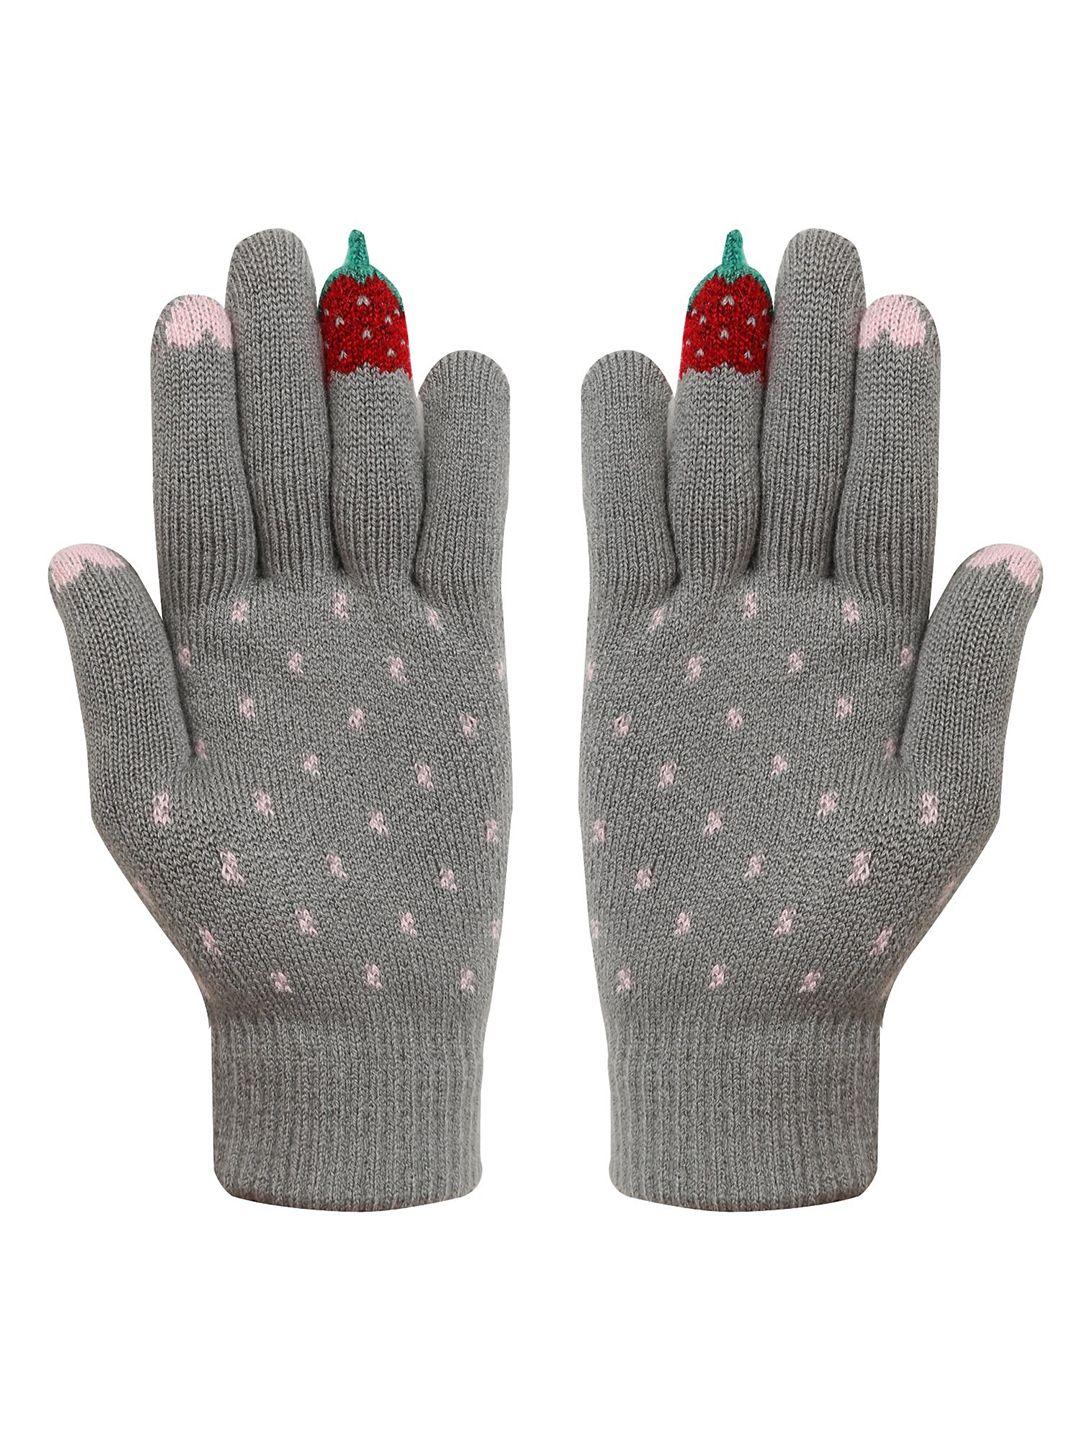 fabseasons kids acrylic woolen winter gloves